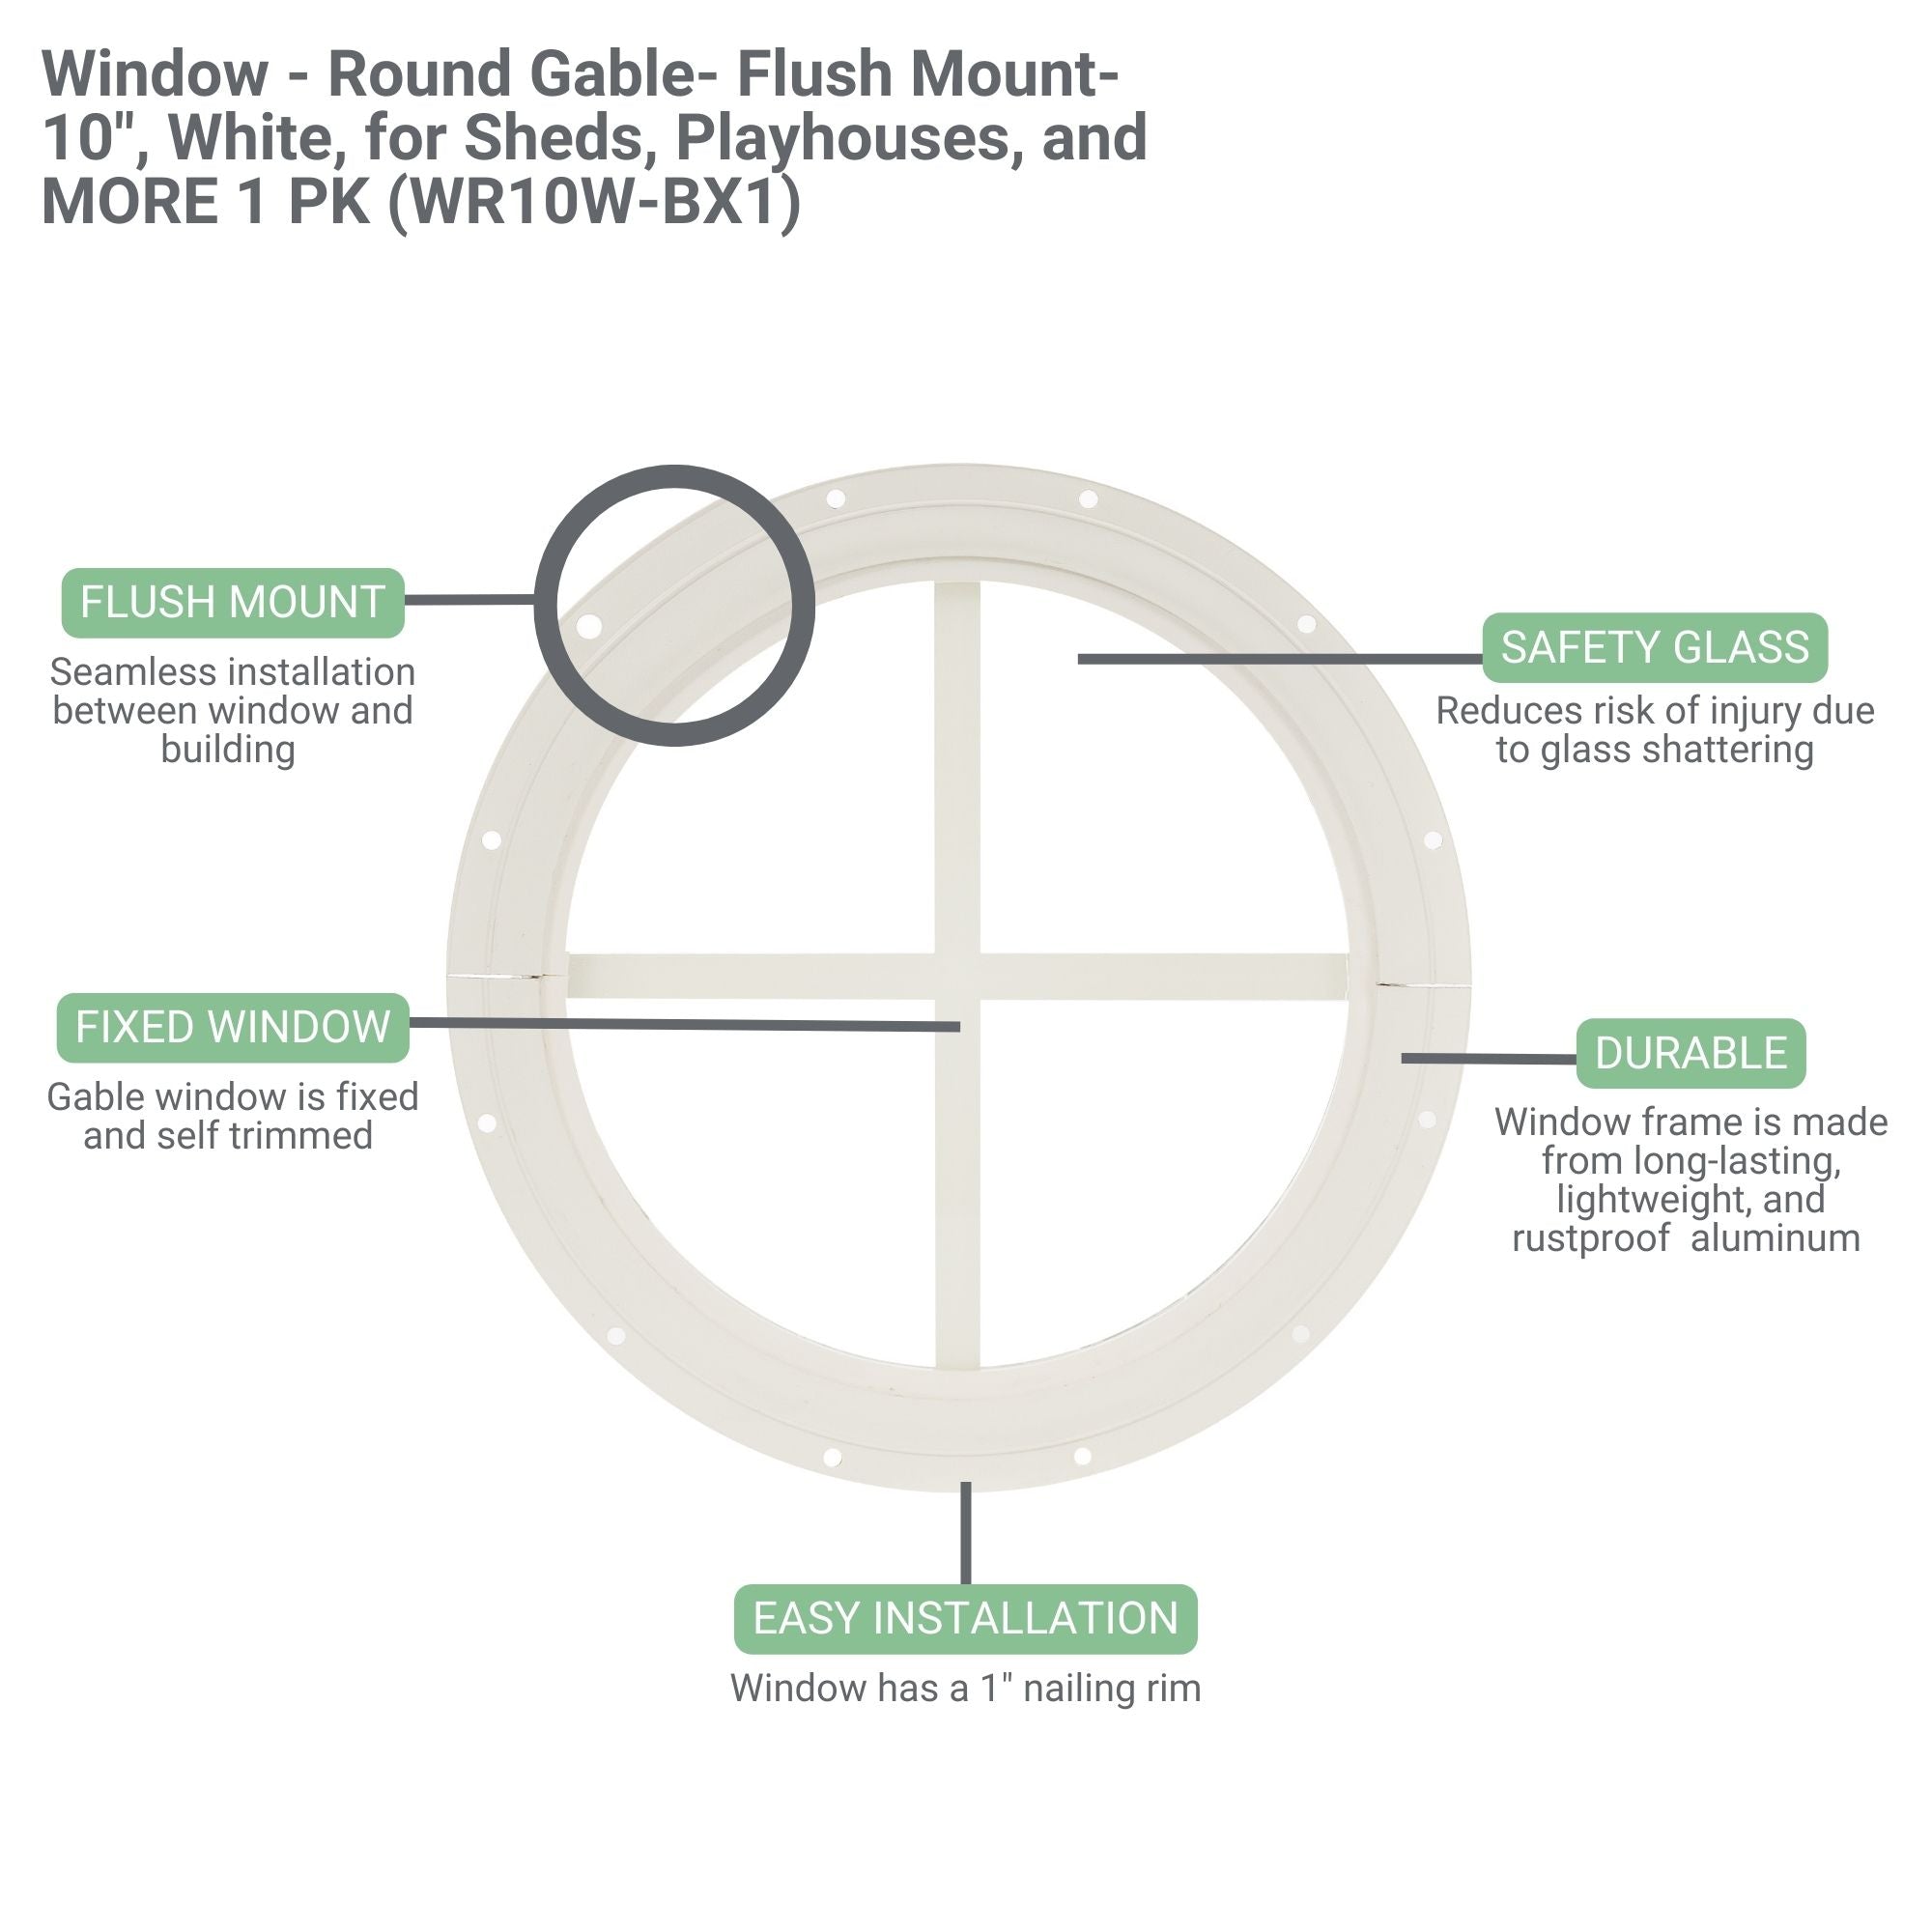 10" Round Gable Flush Mount Shed Window